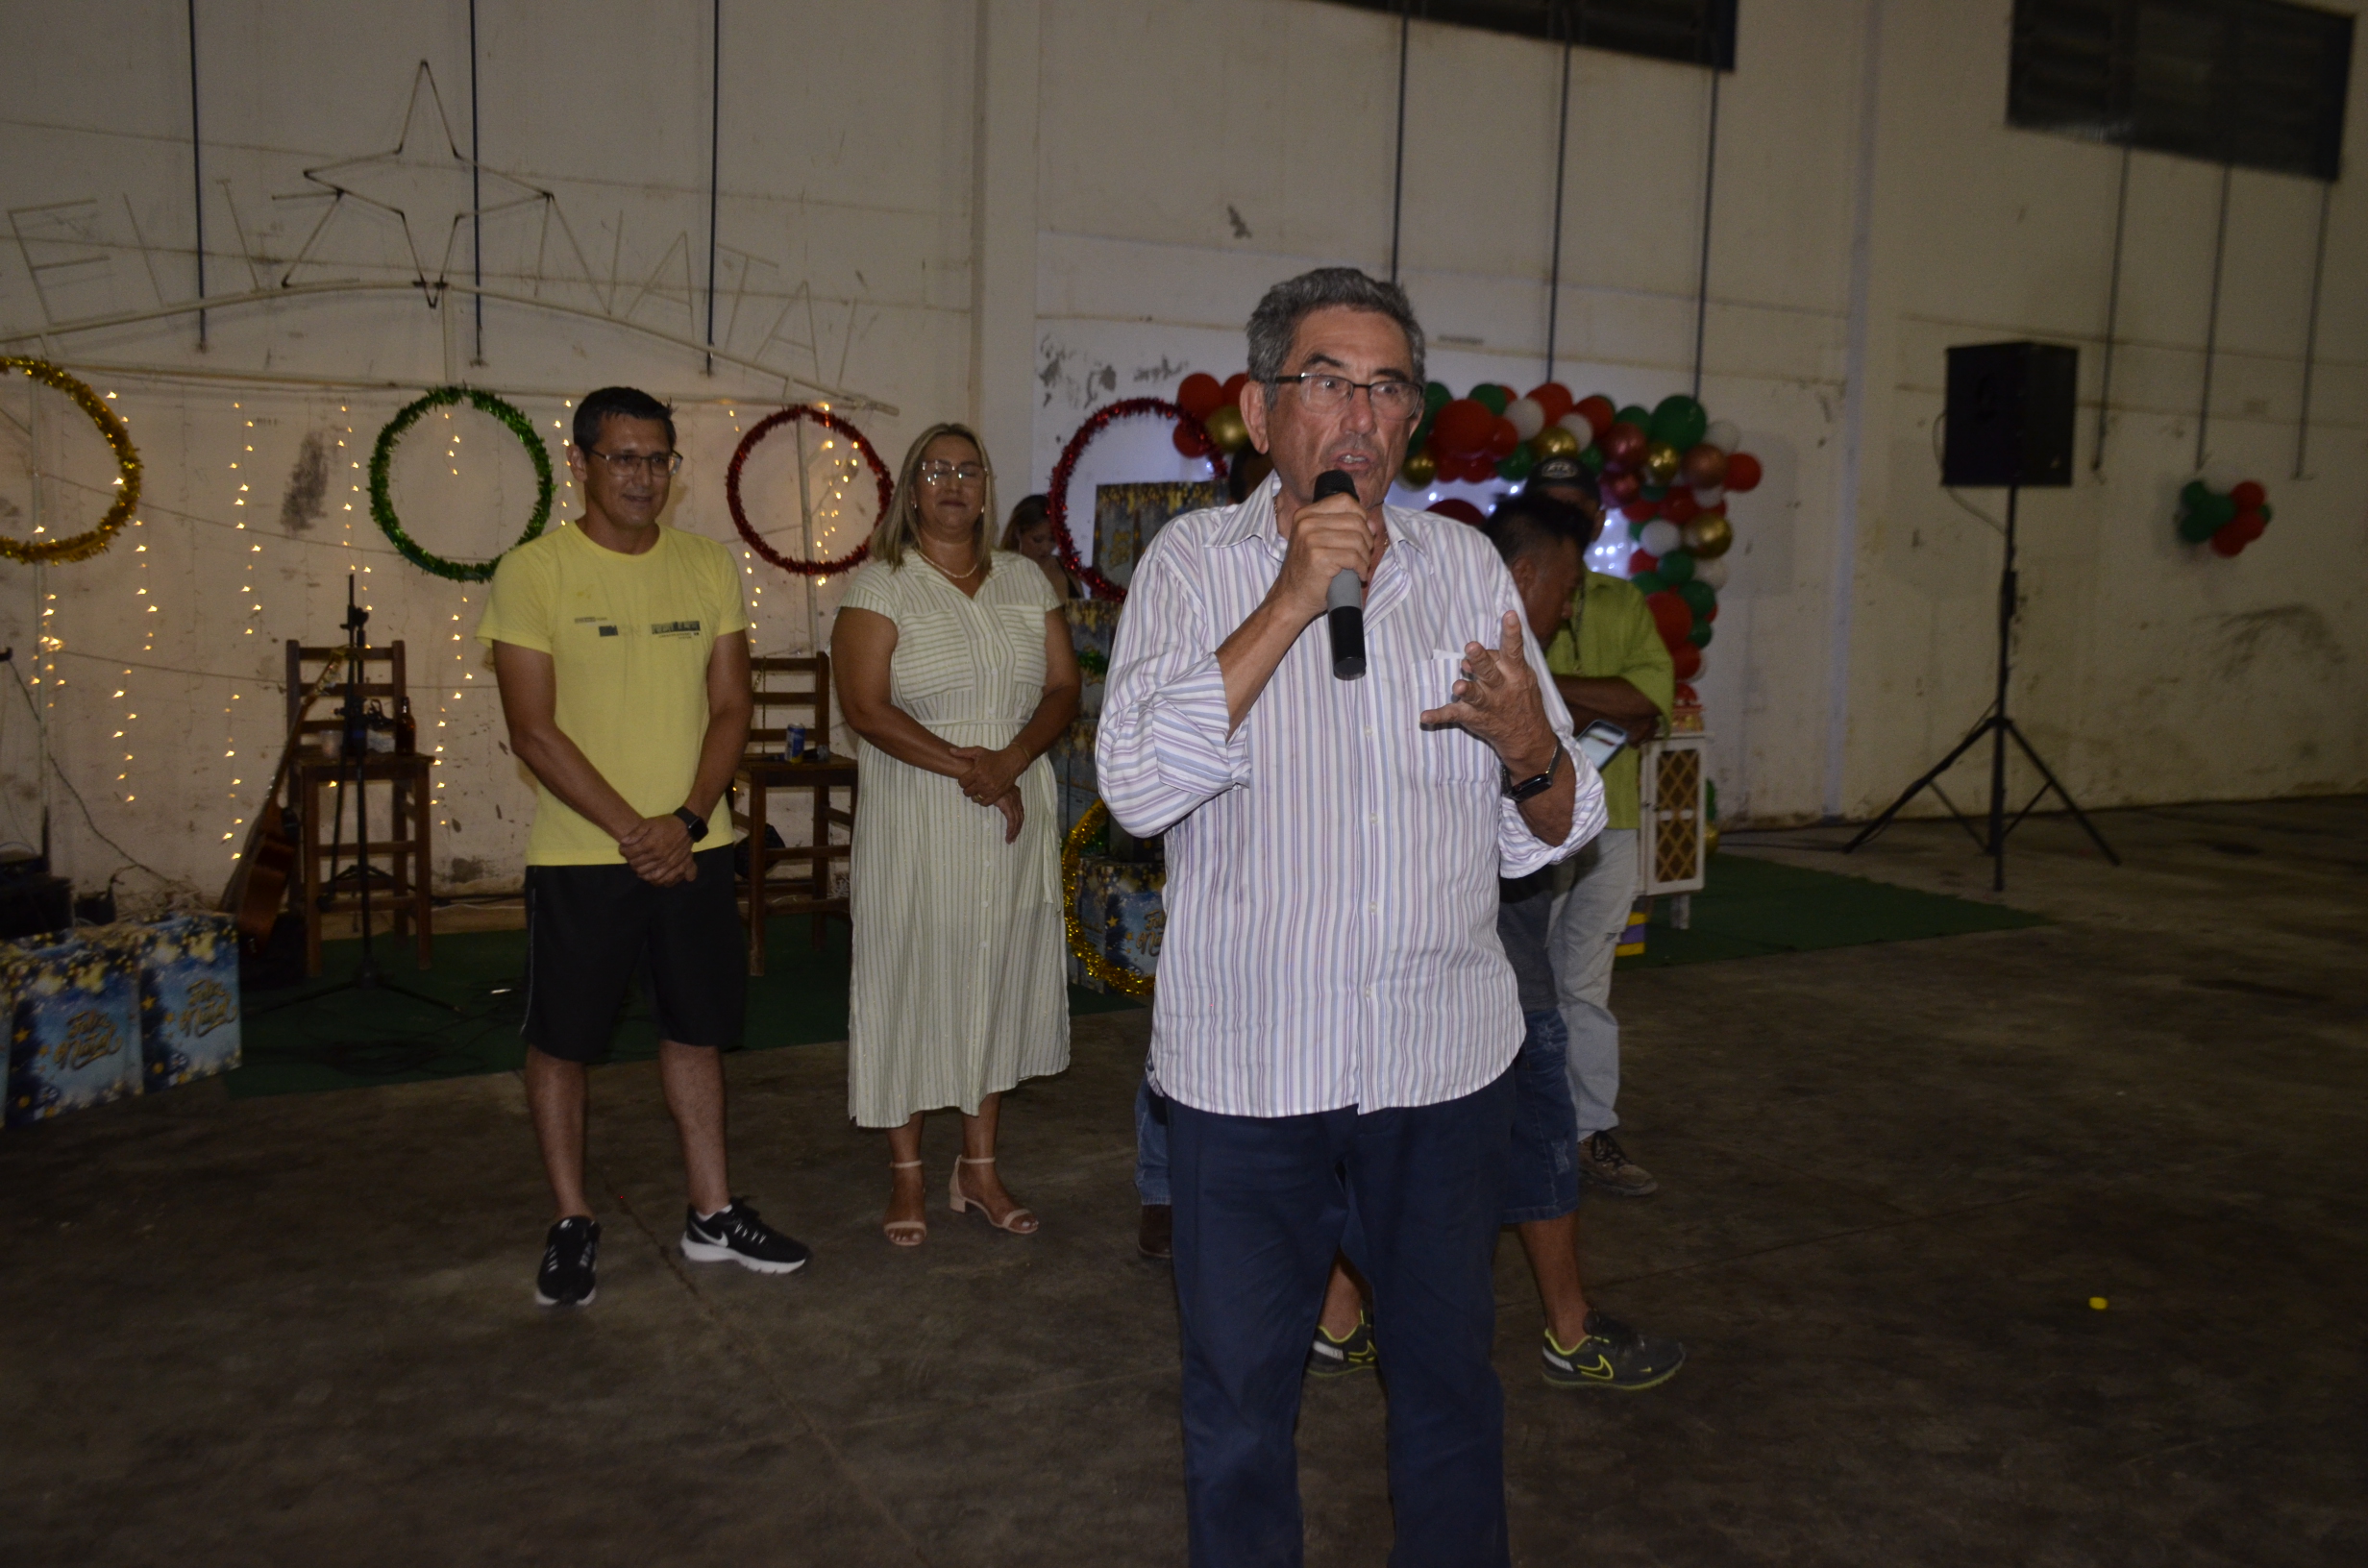 Porto Murtinho:Confira as fotos da Festa de Confraternização da Secretaria de Obras, Habitação e Serviços Públicos